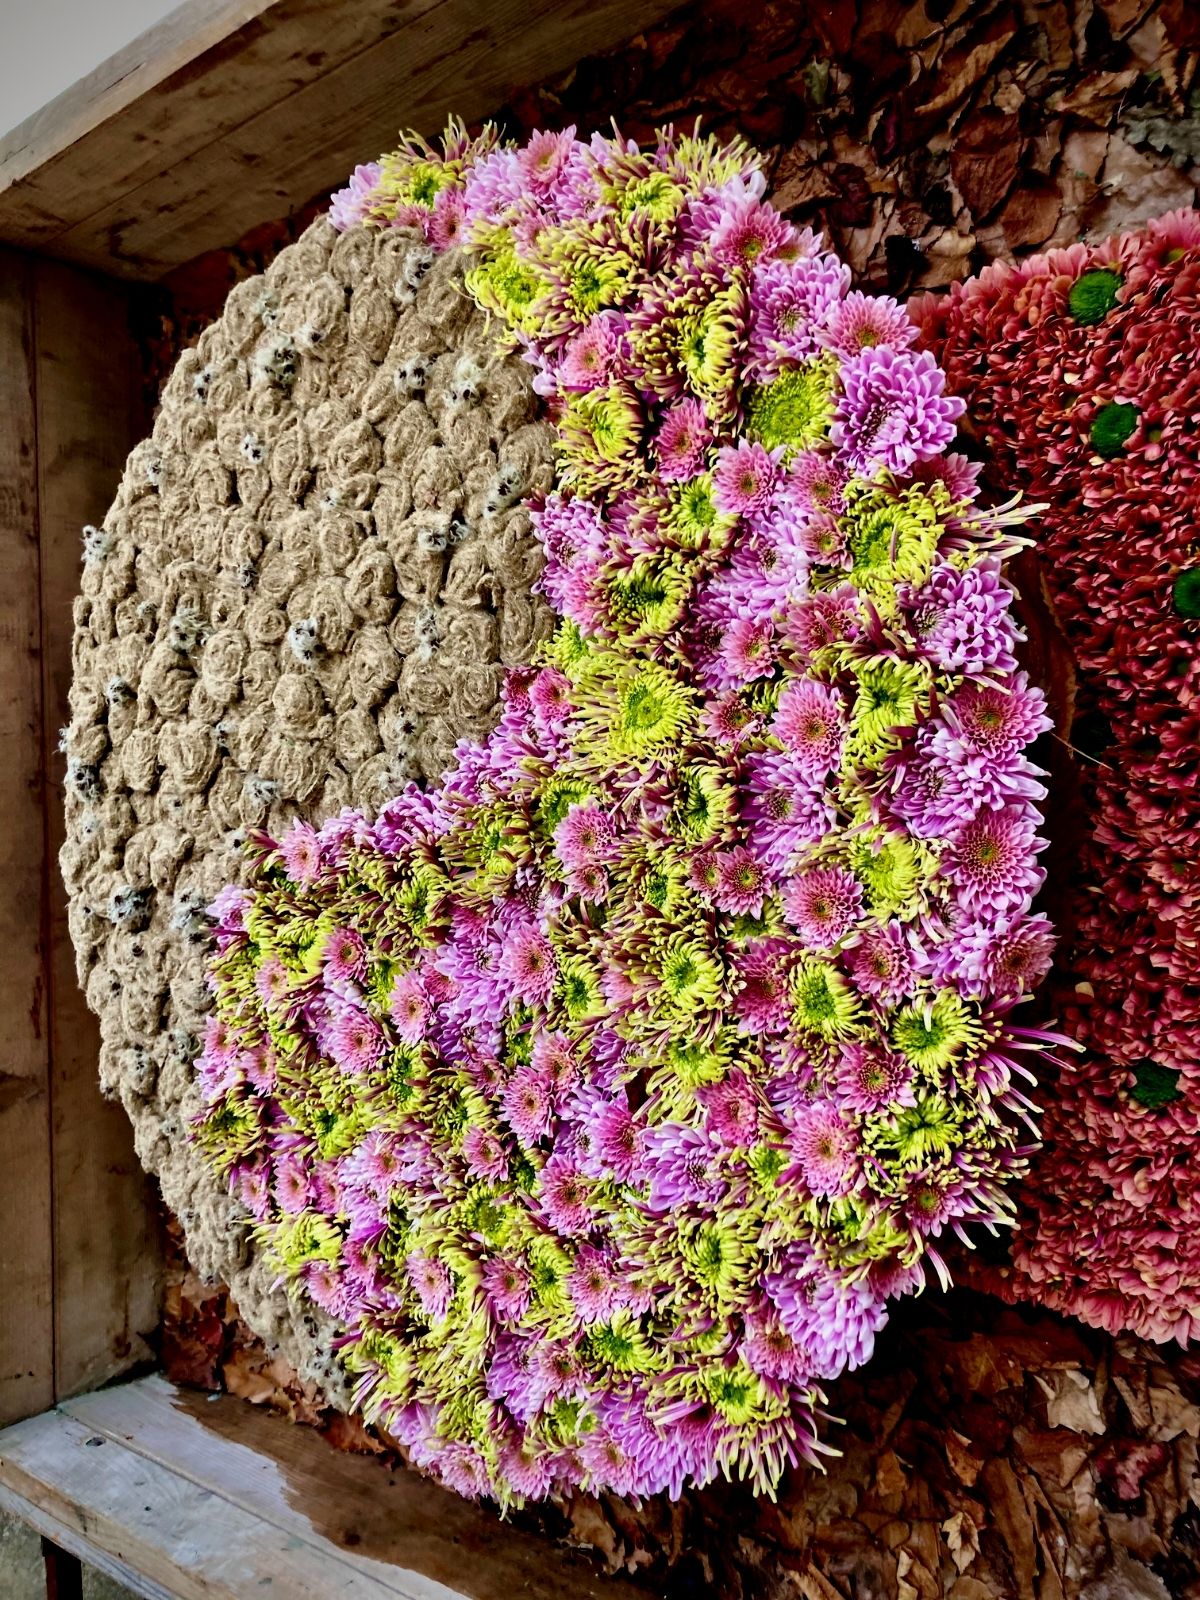 Design Japanese Garden 1 Haiku in bloom by Christa Ory -  flowers Just Chrys  - Blog on Thursd